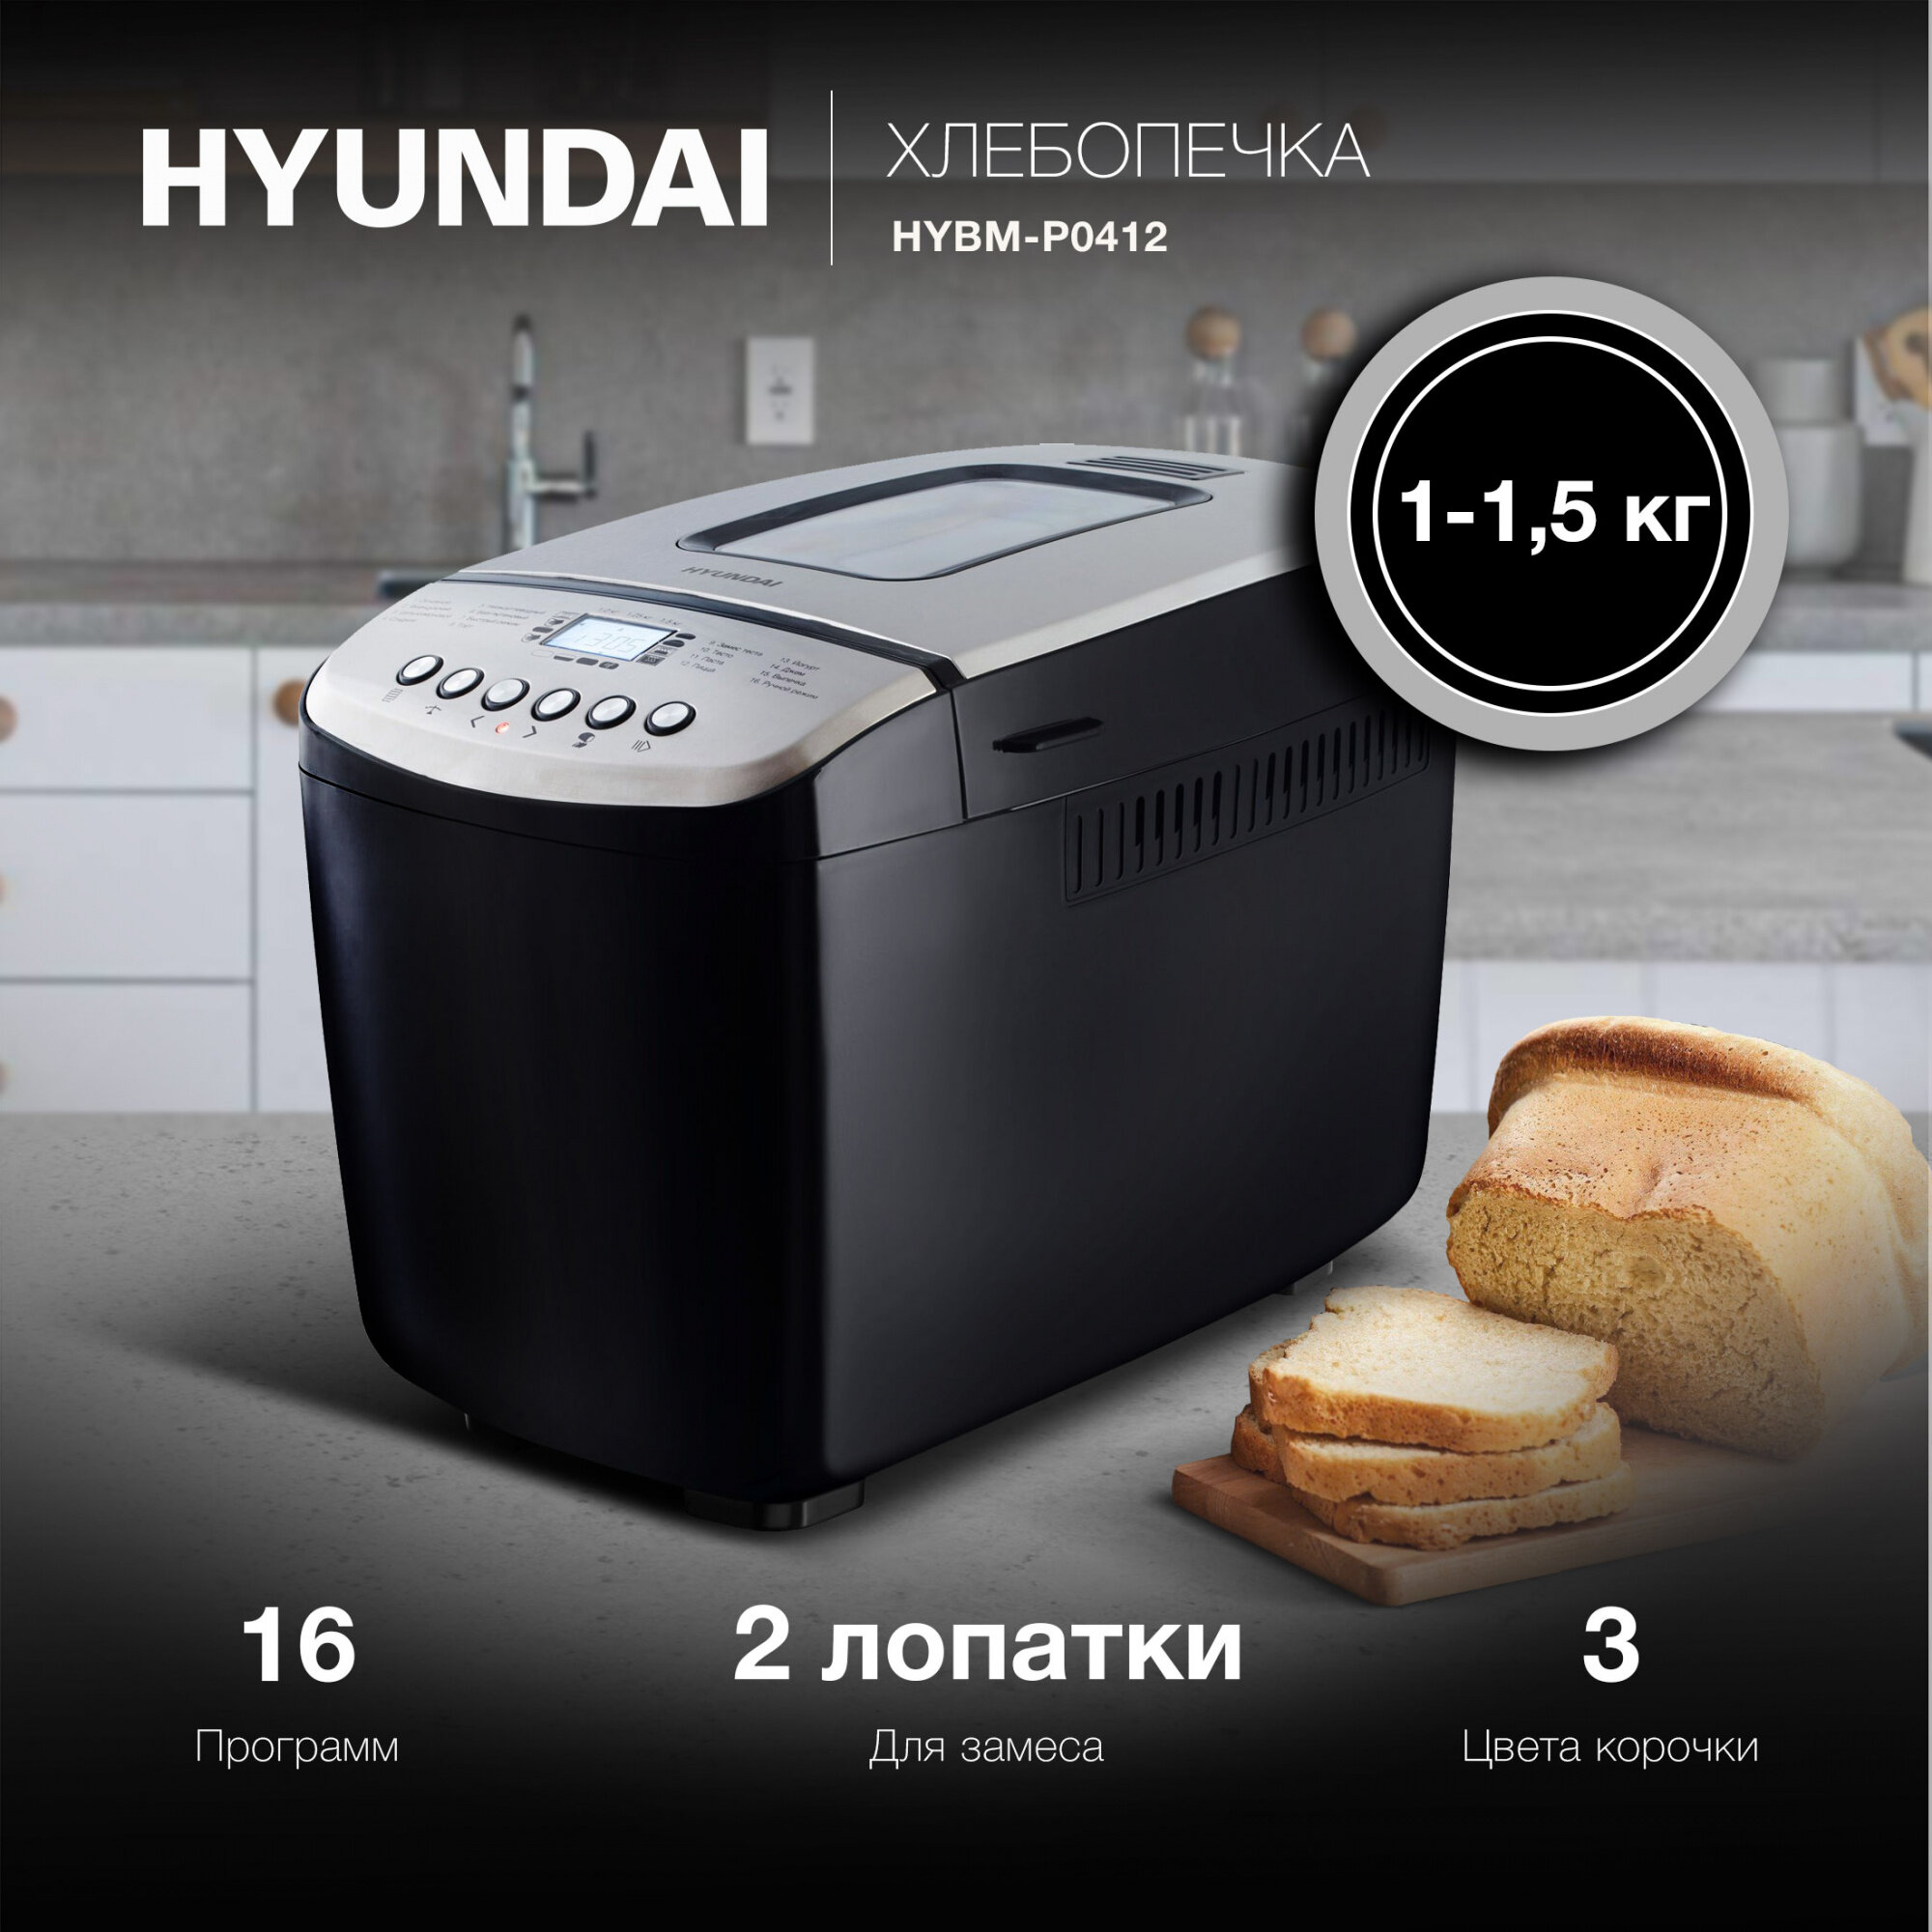 Хлебопечь Hyundai HYBM-P0412 черный/серебристый